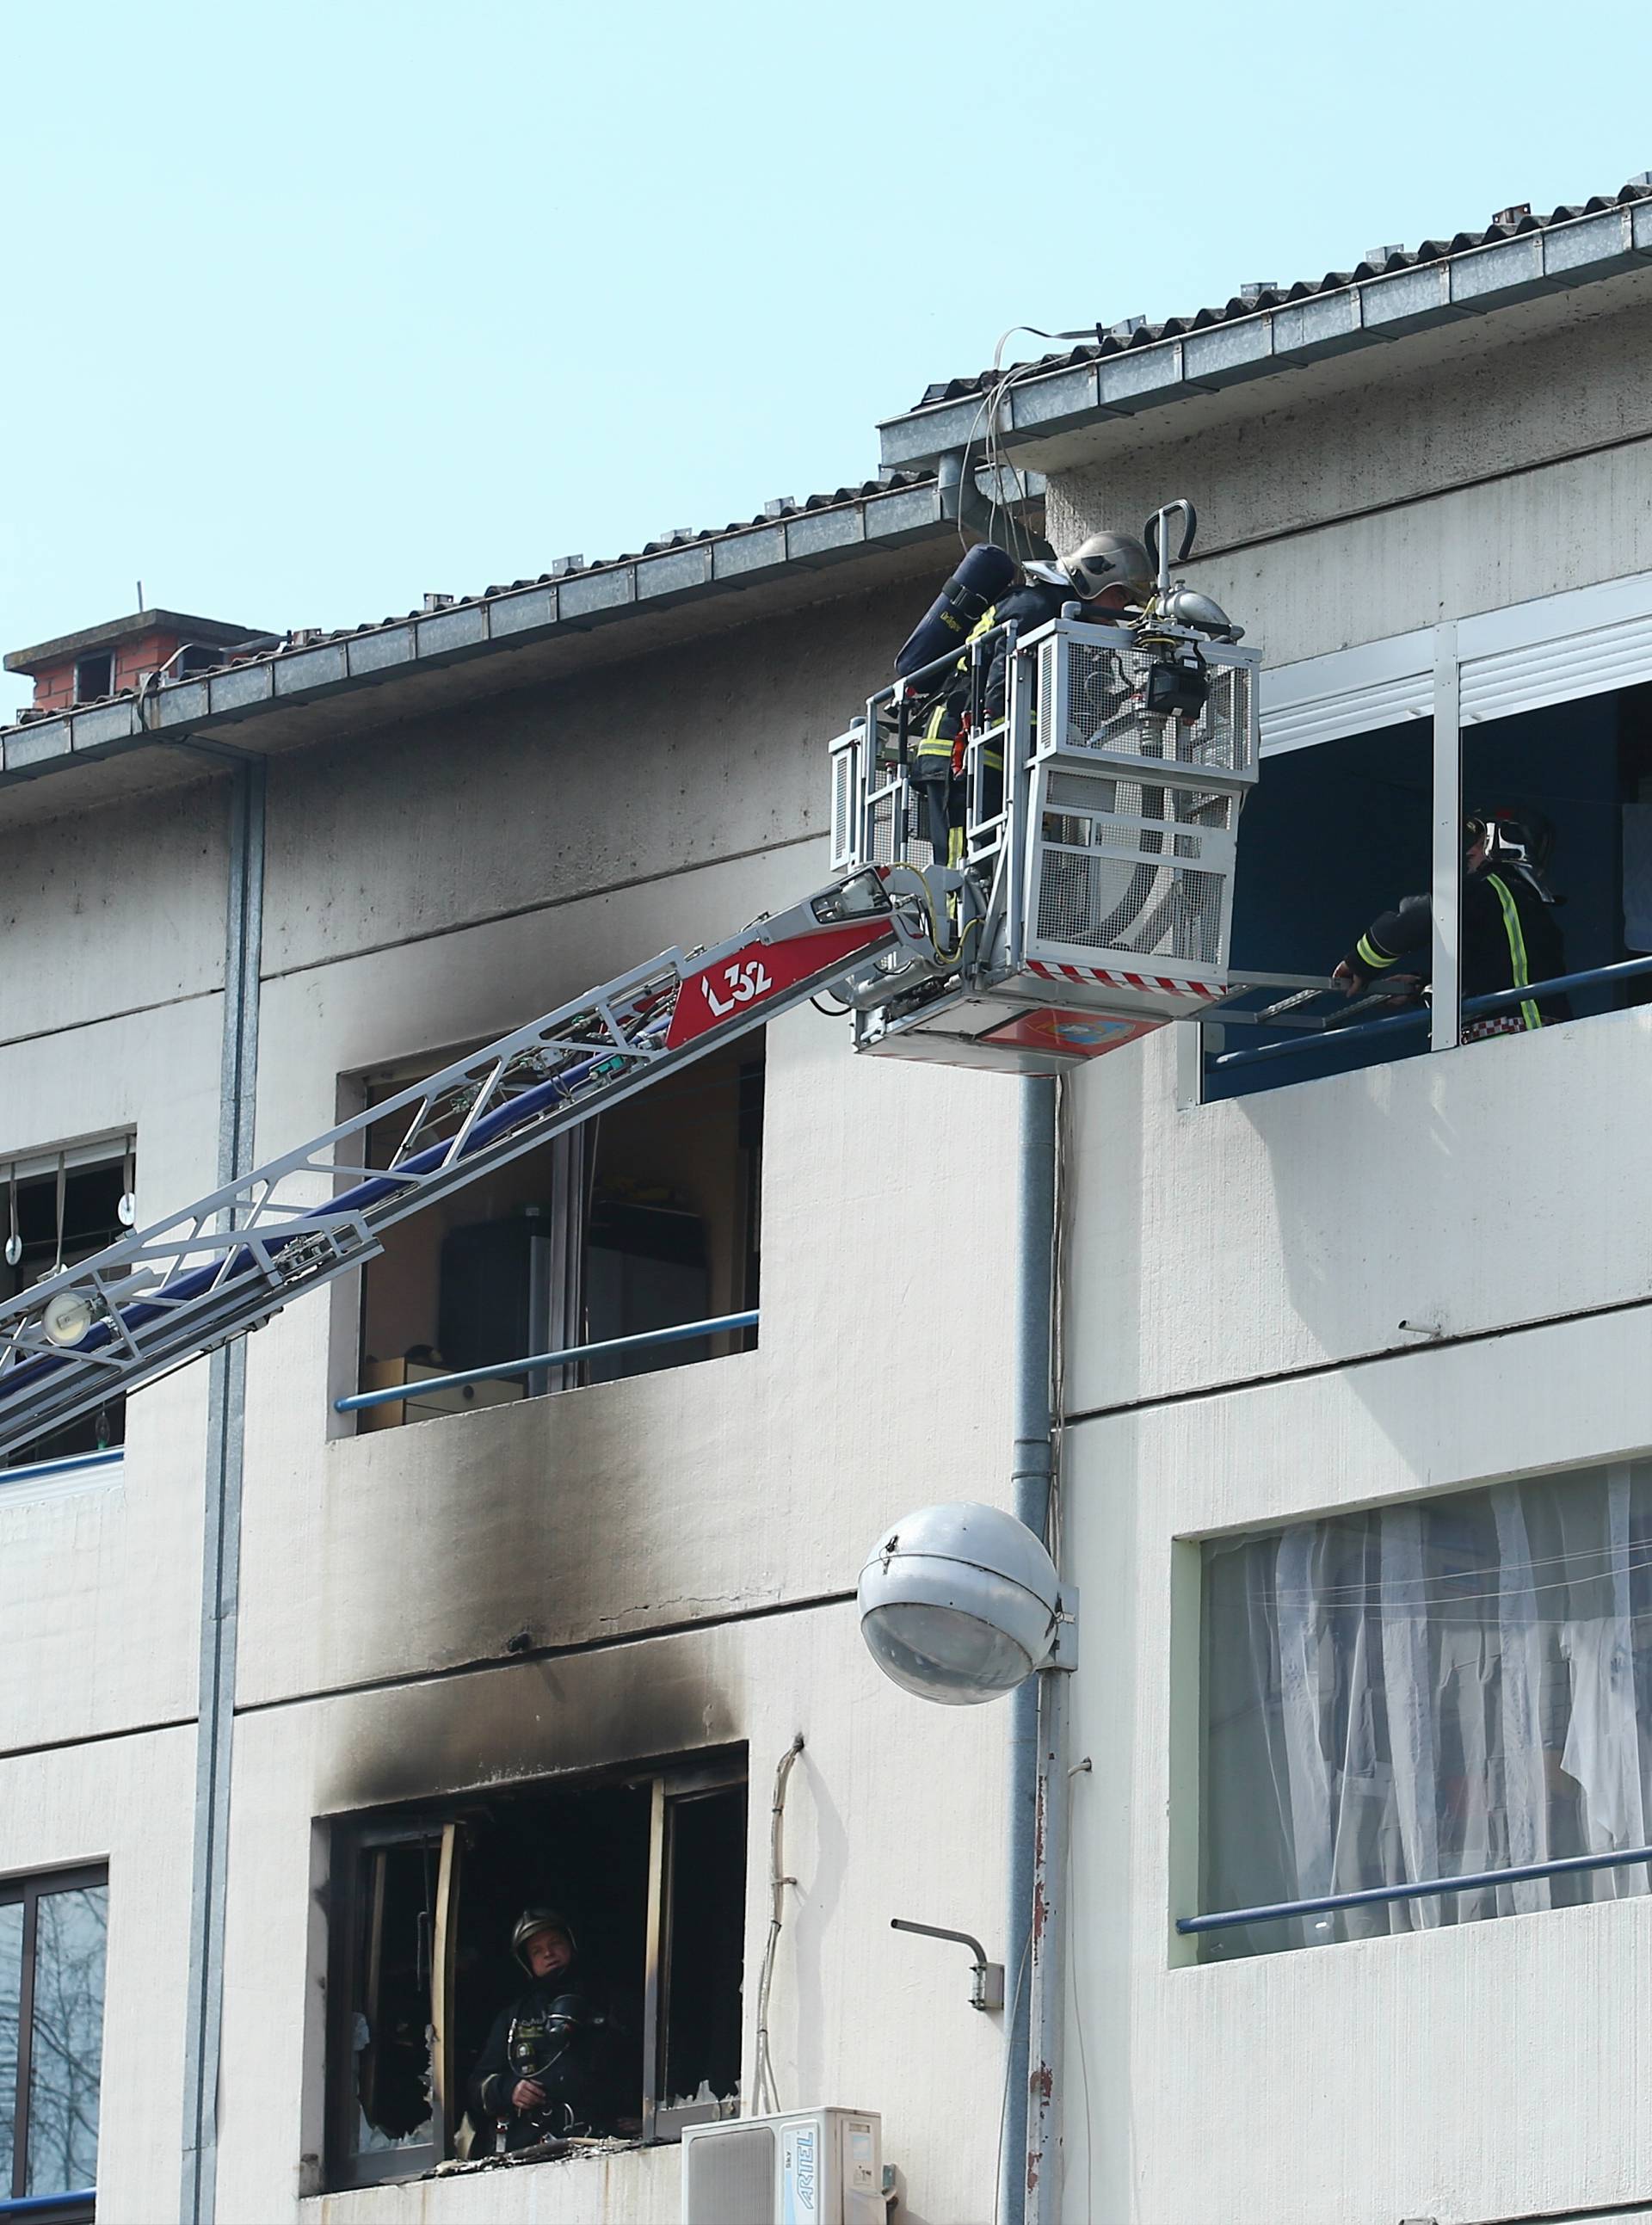 Šteta 100.000 kuna: Otvoreni plamen uzrok  požara u stanu